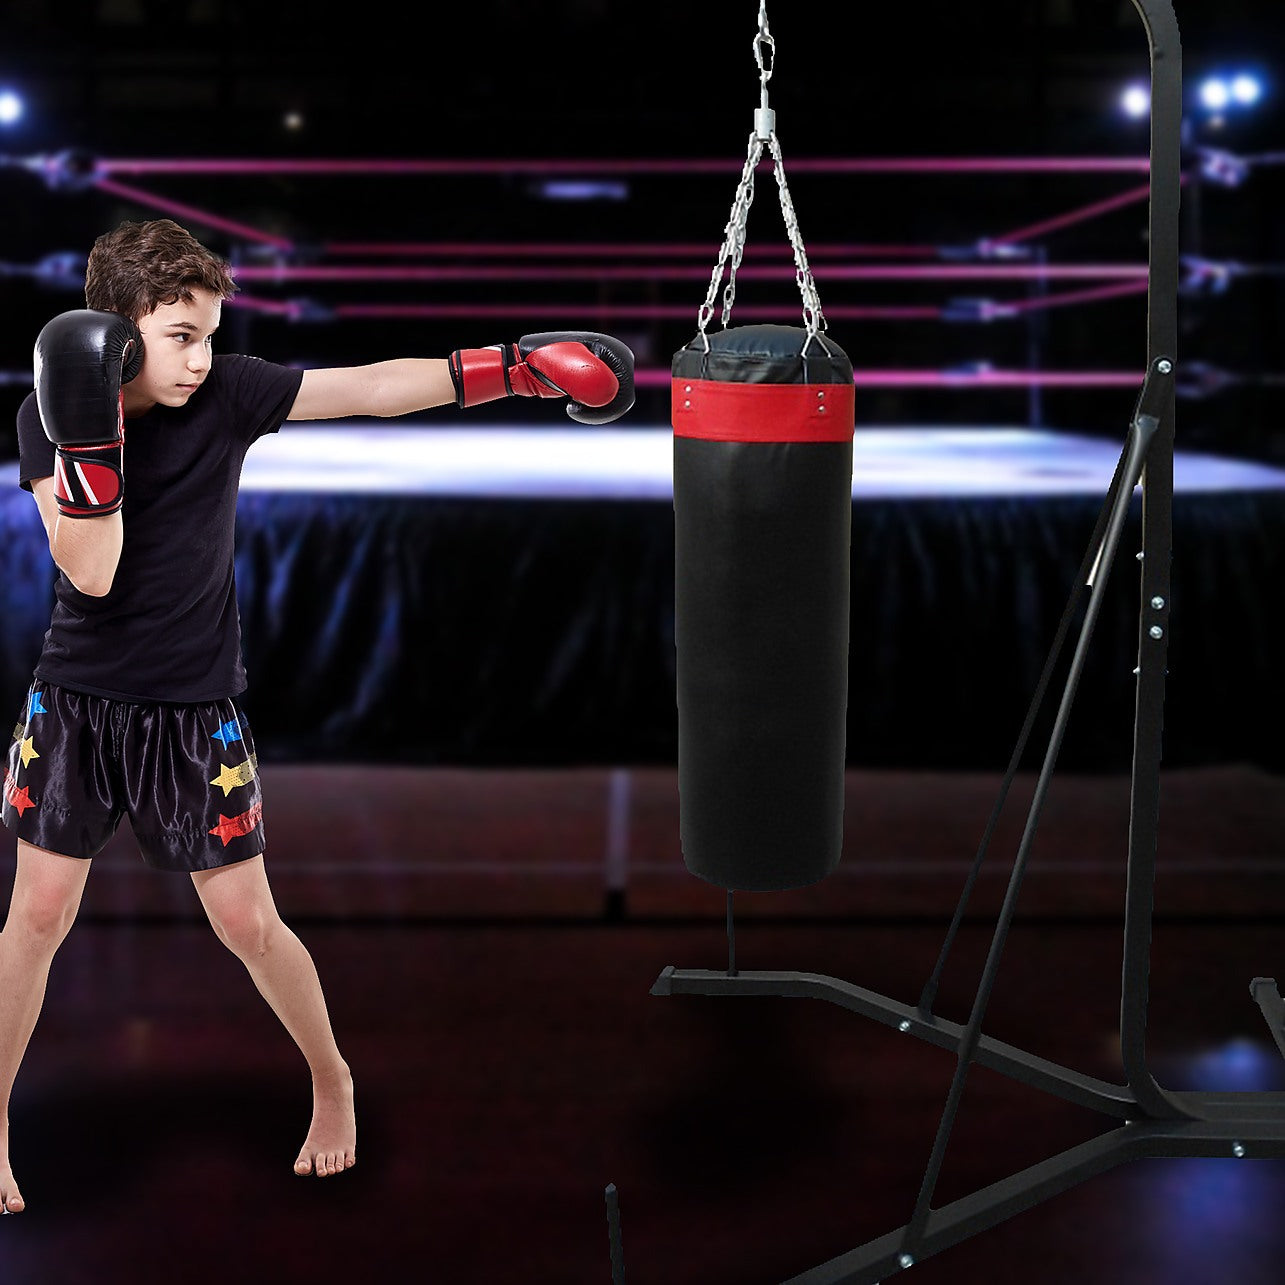 Buy Boxing Punching Bag Filling online